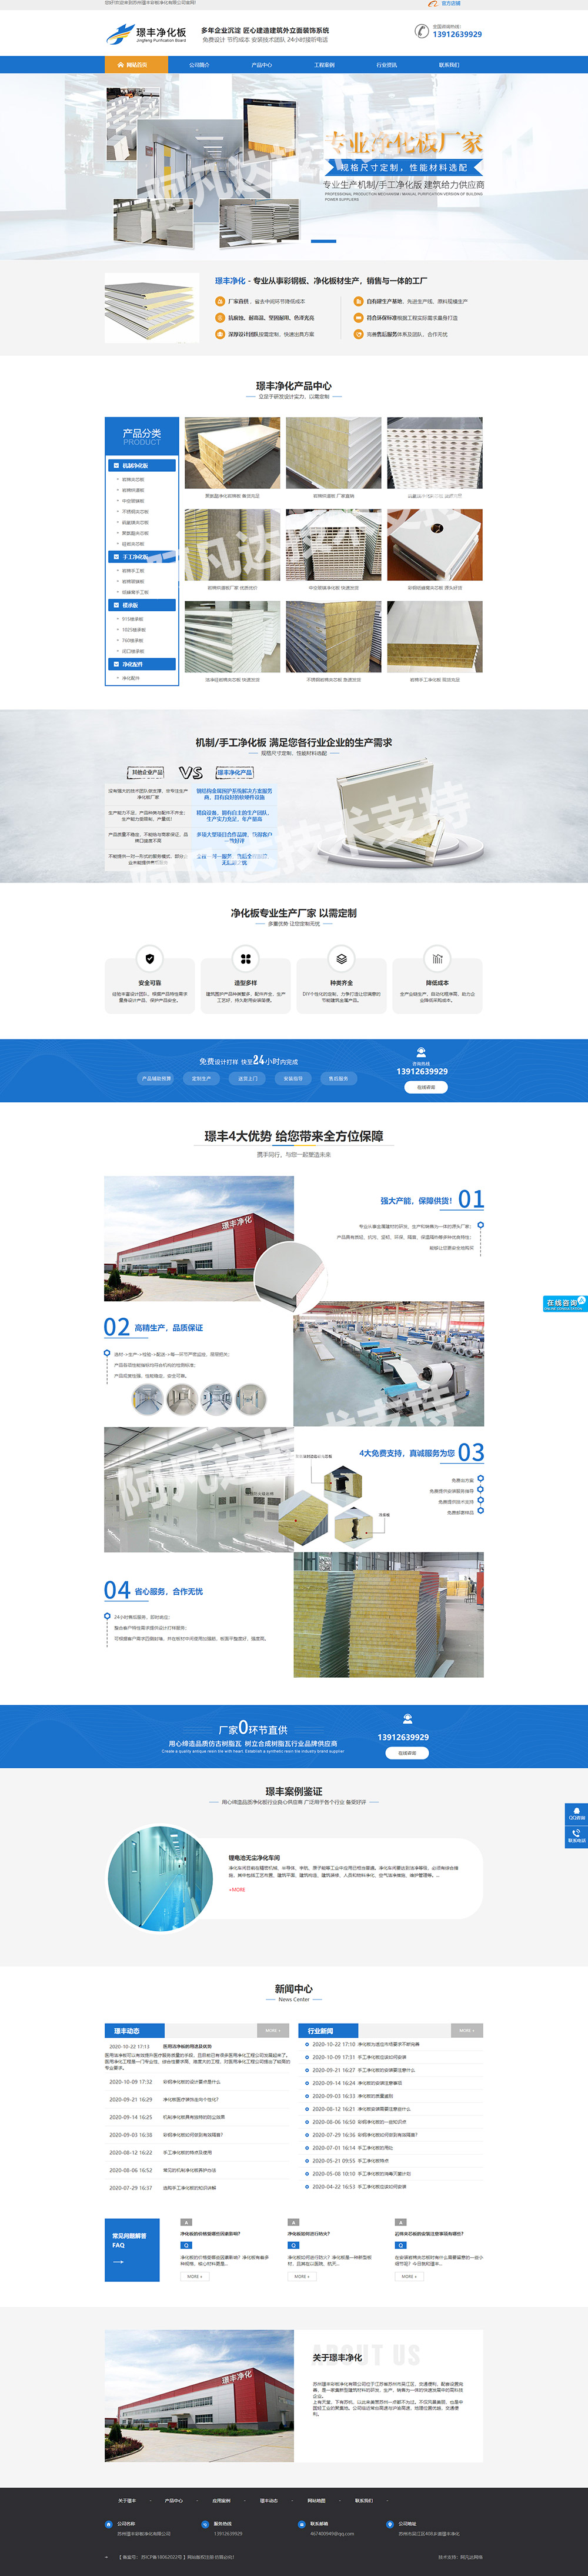 苏州璟丰净化板营销型网站设计案例展示